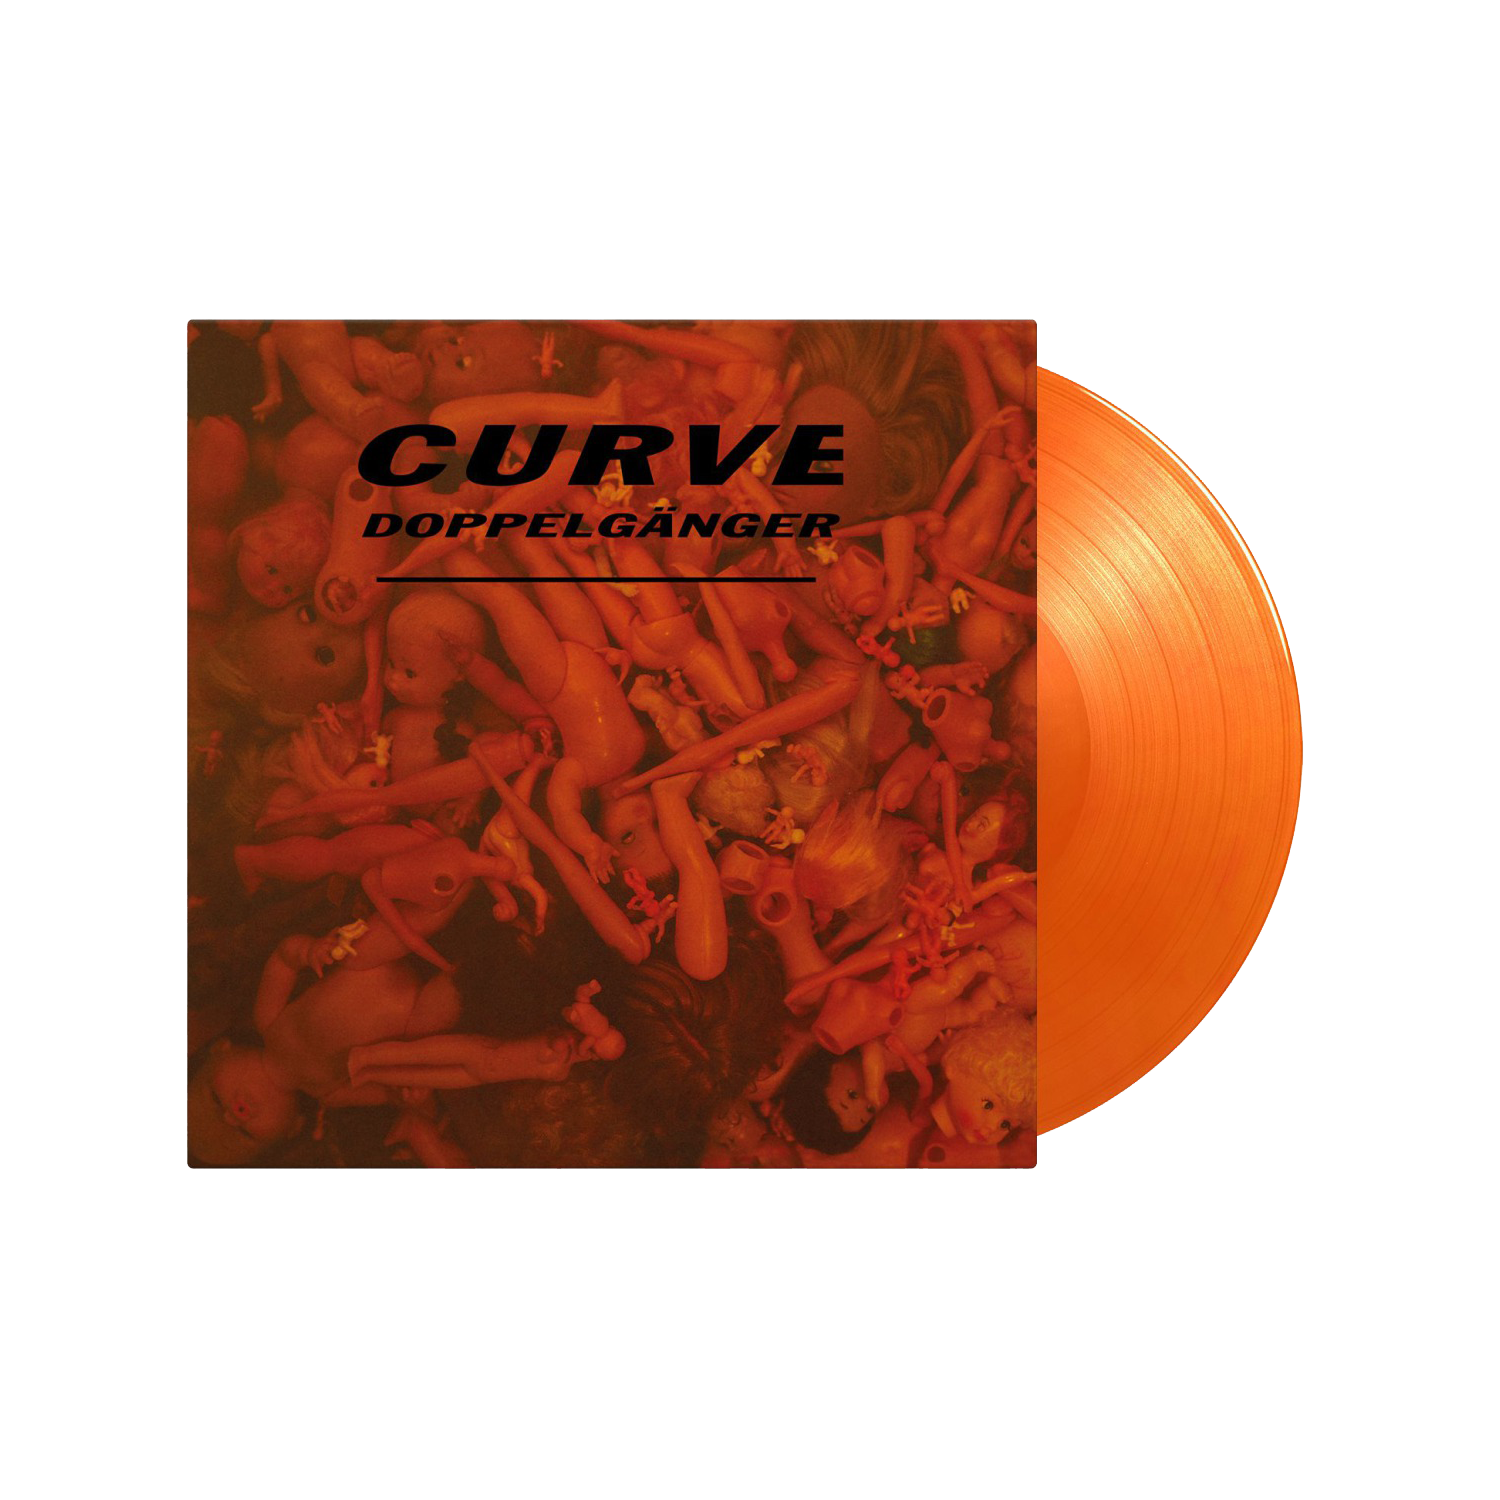 Curve - Doppelganger: Limited Translucent Orange Marbled Vinyl LP